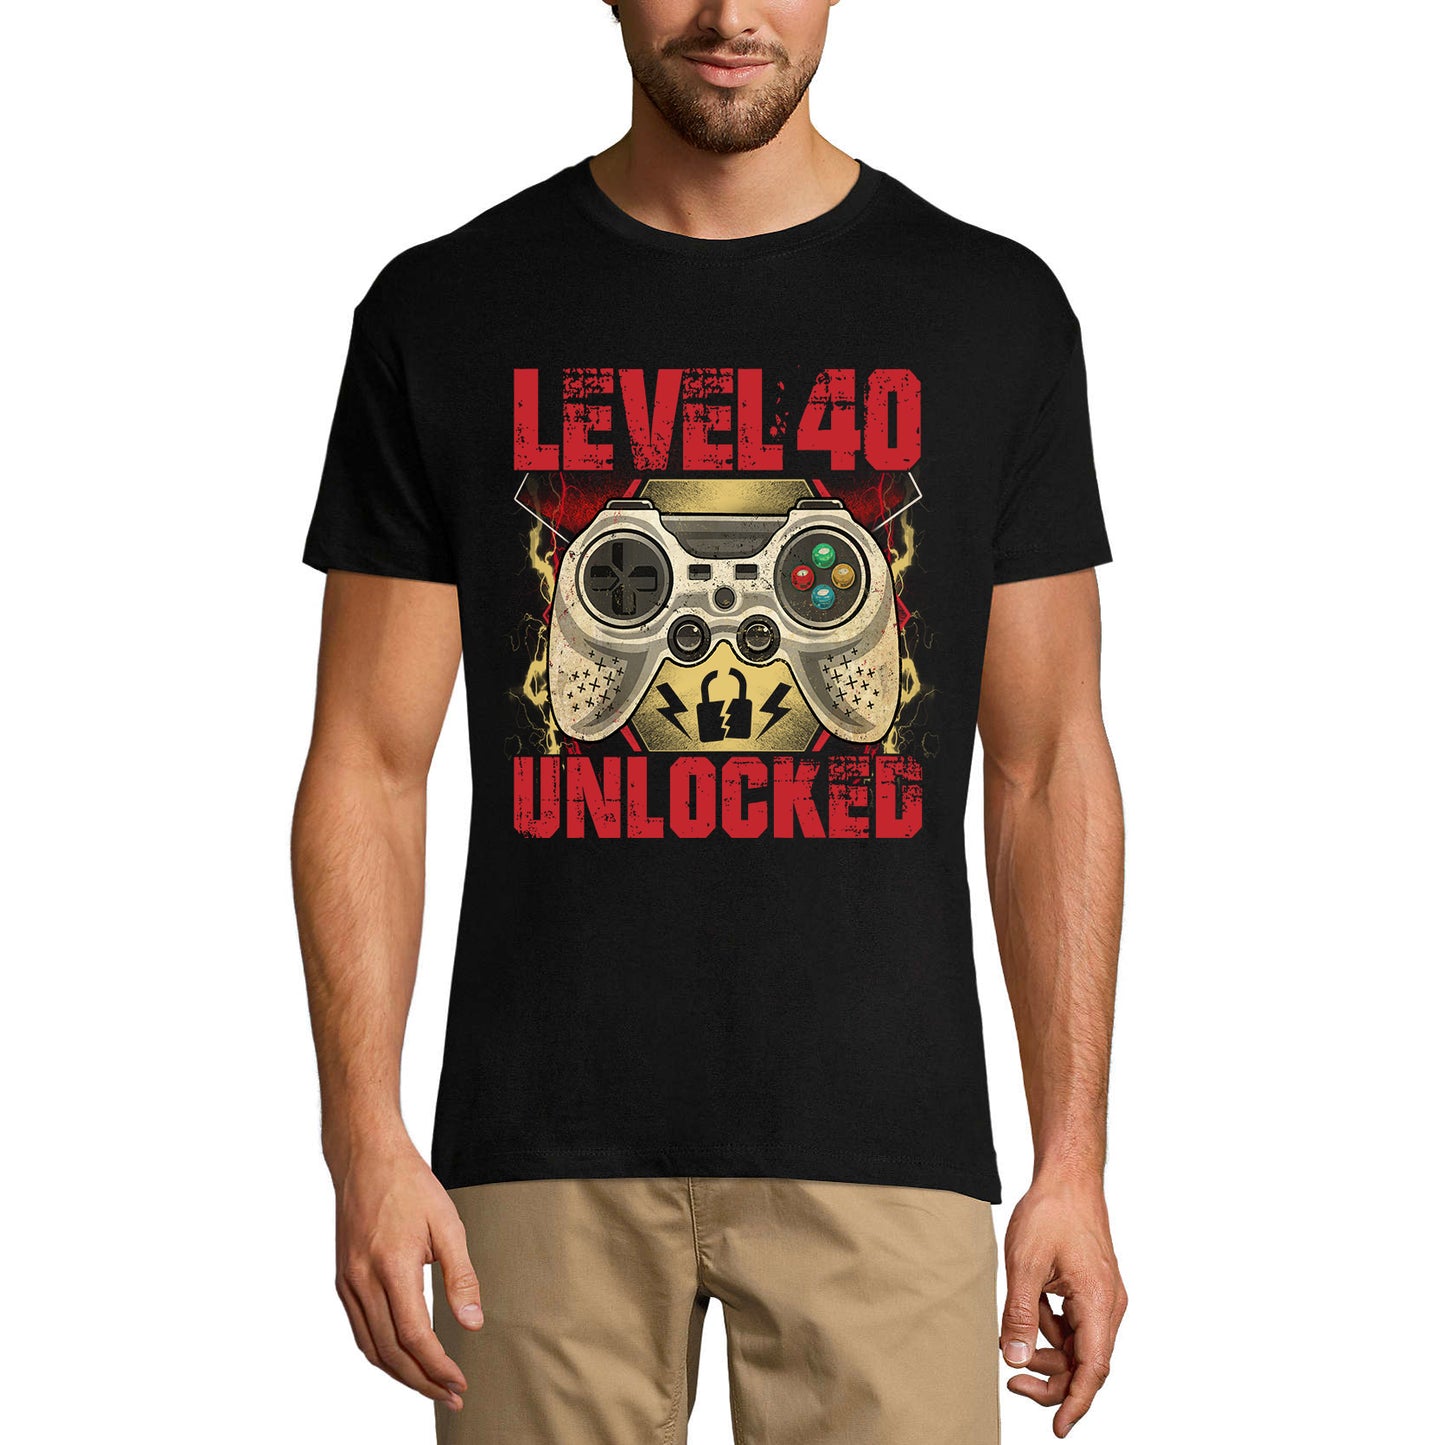 ULTRABASIC Men's Gaming T-Shirt Level 40 Unlocked - Gaming Gamer Joystick 40th Birthday Tee Shirt